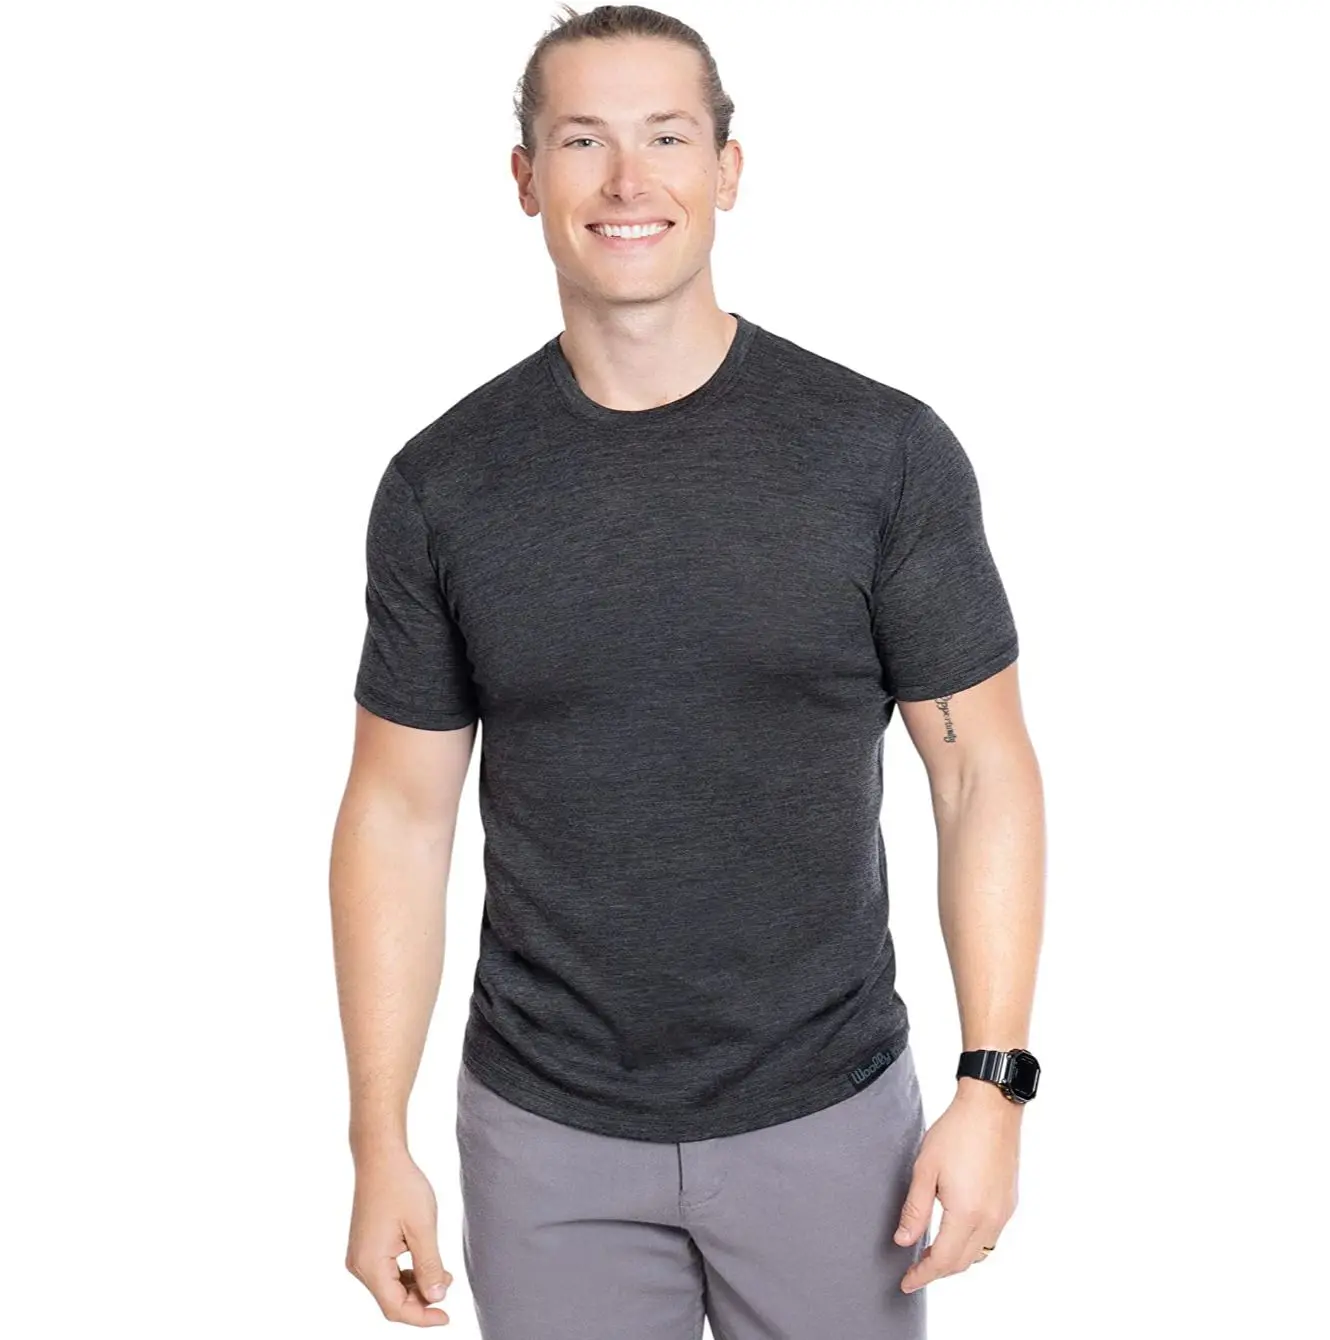 Merino Wolle T -Shirt Männer 100% Merino Wolle Unterhemd Leichte Basisschicht Mann Outdoor Kurzarm Tee Wandern Rennen laufen